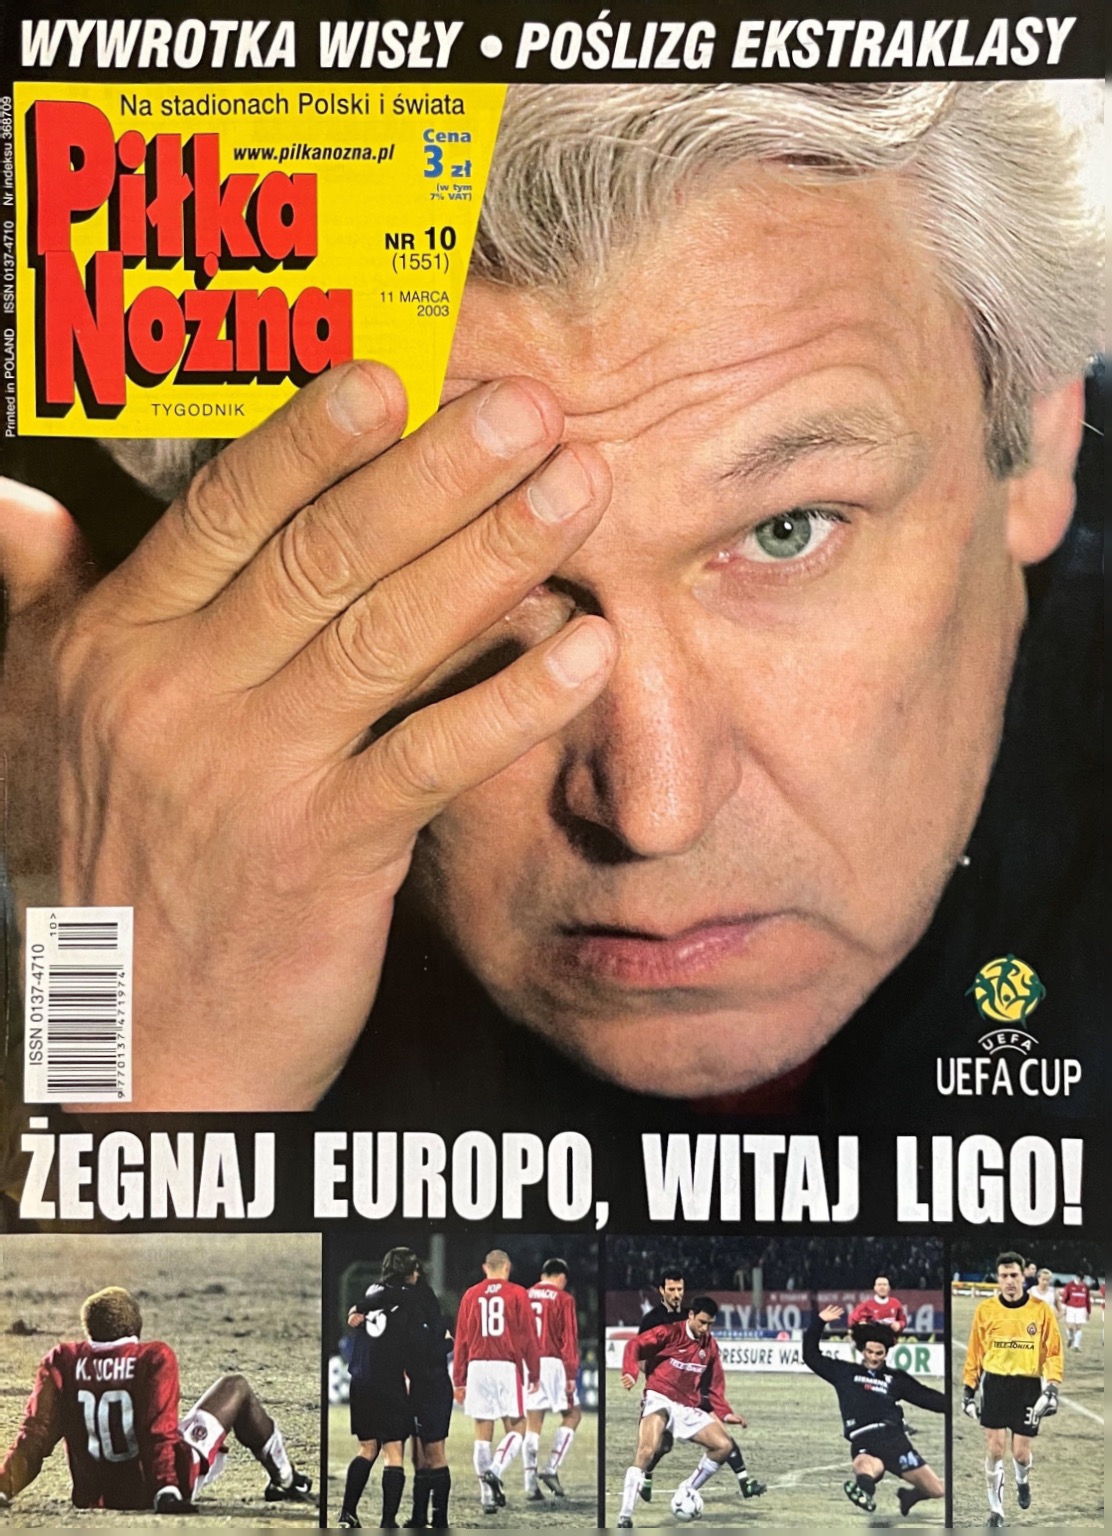 Piłka Nożna po meczu Wisła Kraków - Lazio Rzym 1:2 (05.03.2003)